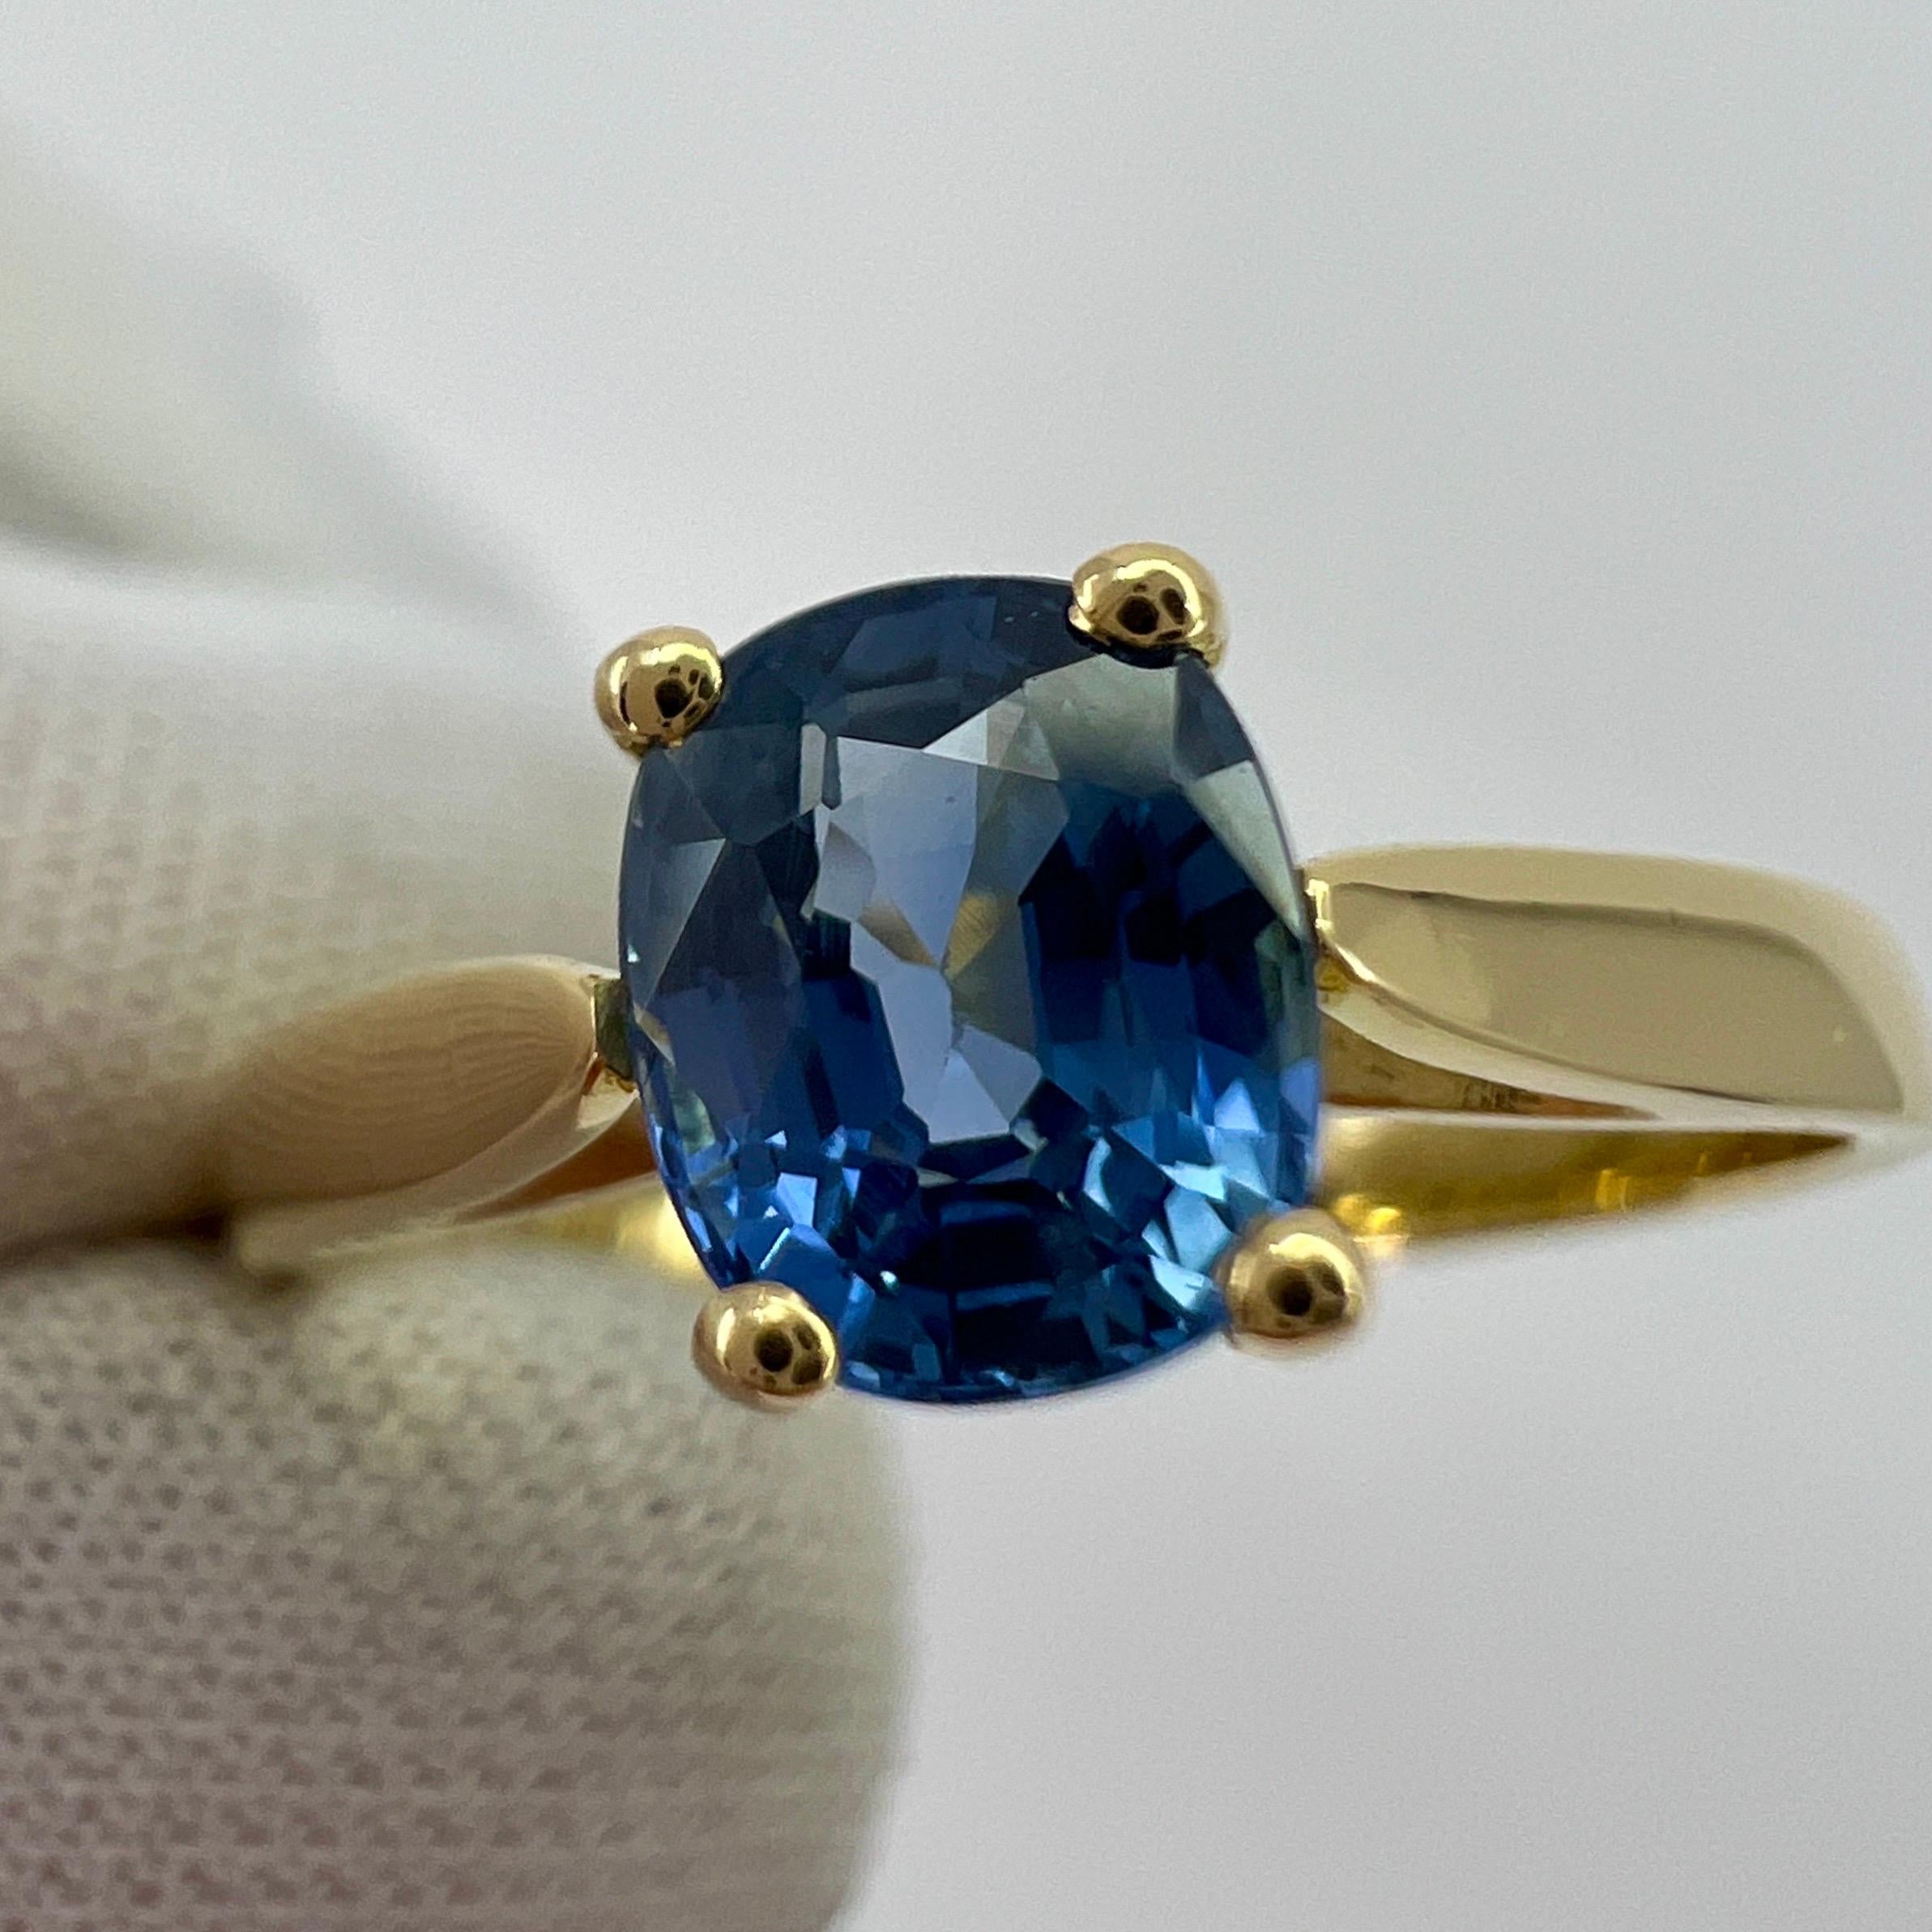 Vivid Cornflower Blue 1.03ct Ceylon Sapphire Cushion Cut 18k Gold Solitaire Ring 1